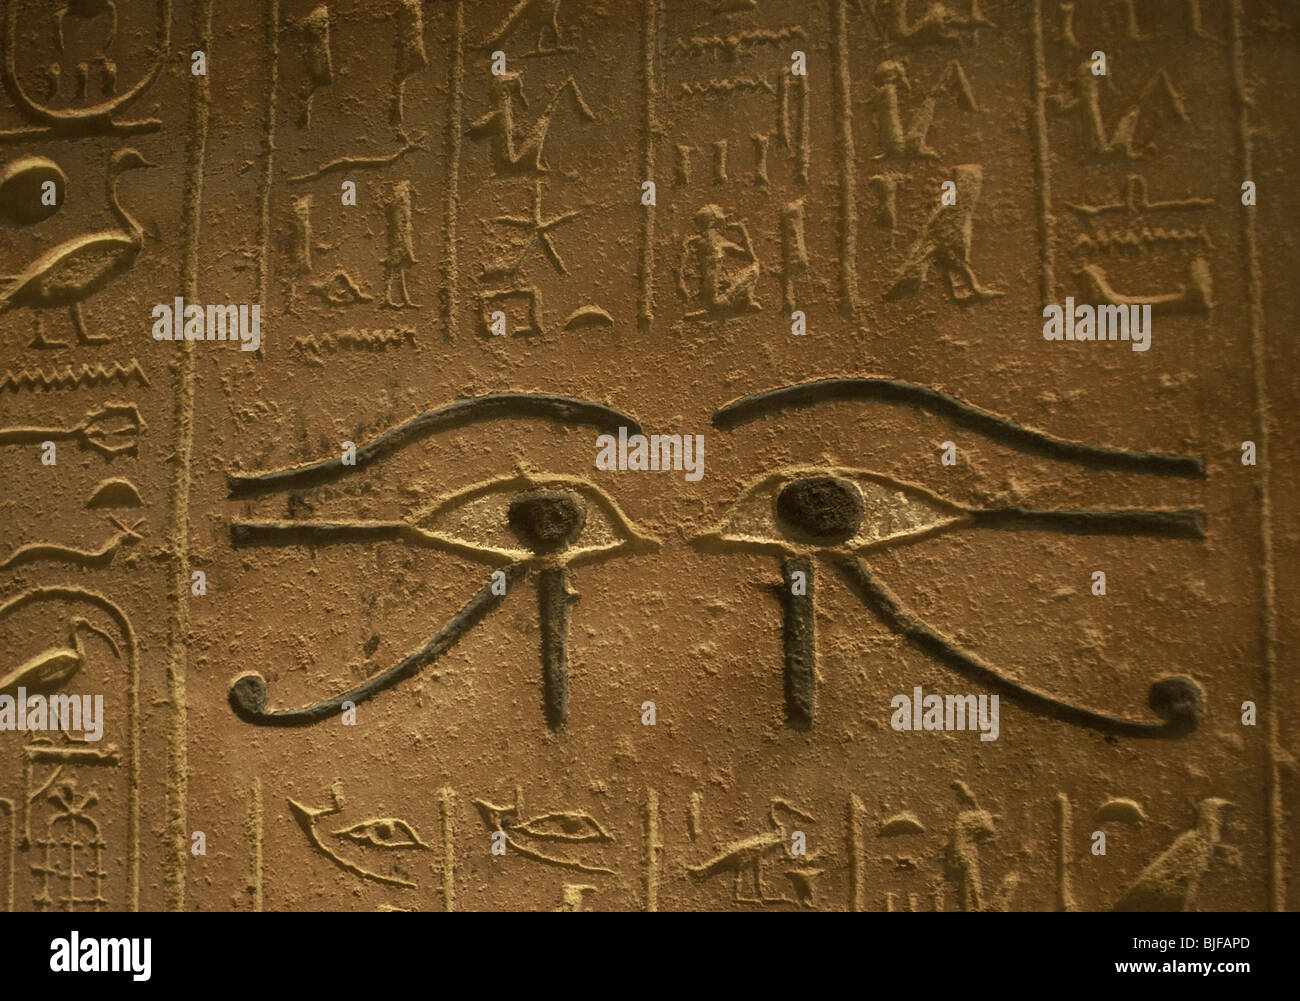 Menjeperura Tutmosis oder Grab Thutmosis IV (1400-1301 v. Chr.). Die beiden Augen des Horus. Tal der Könige. Ägypten. Stockfoto